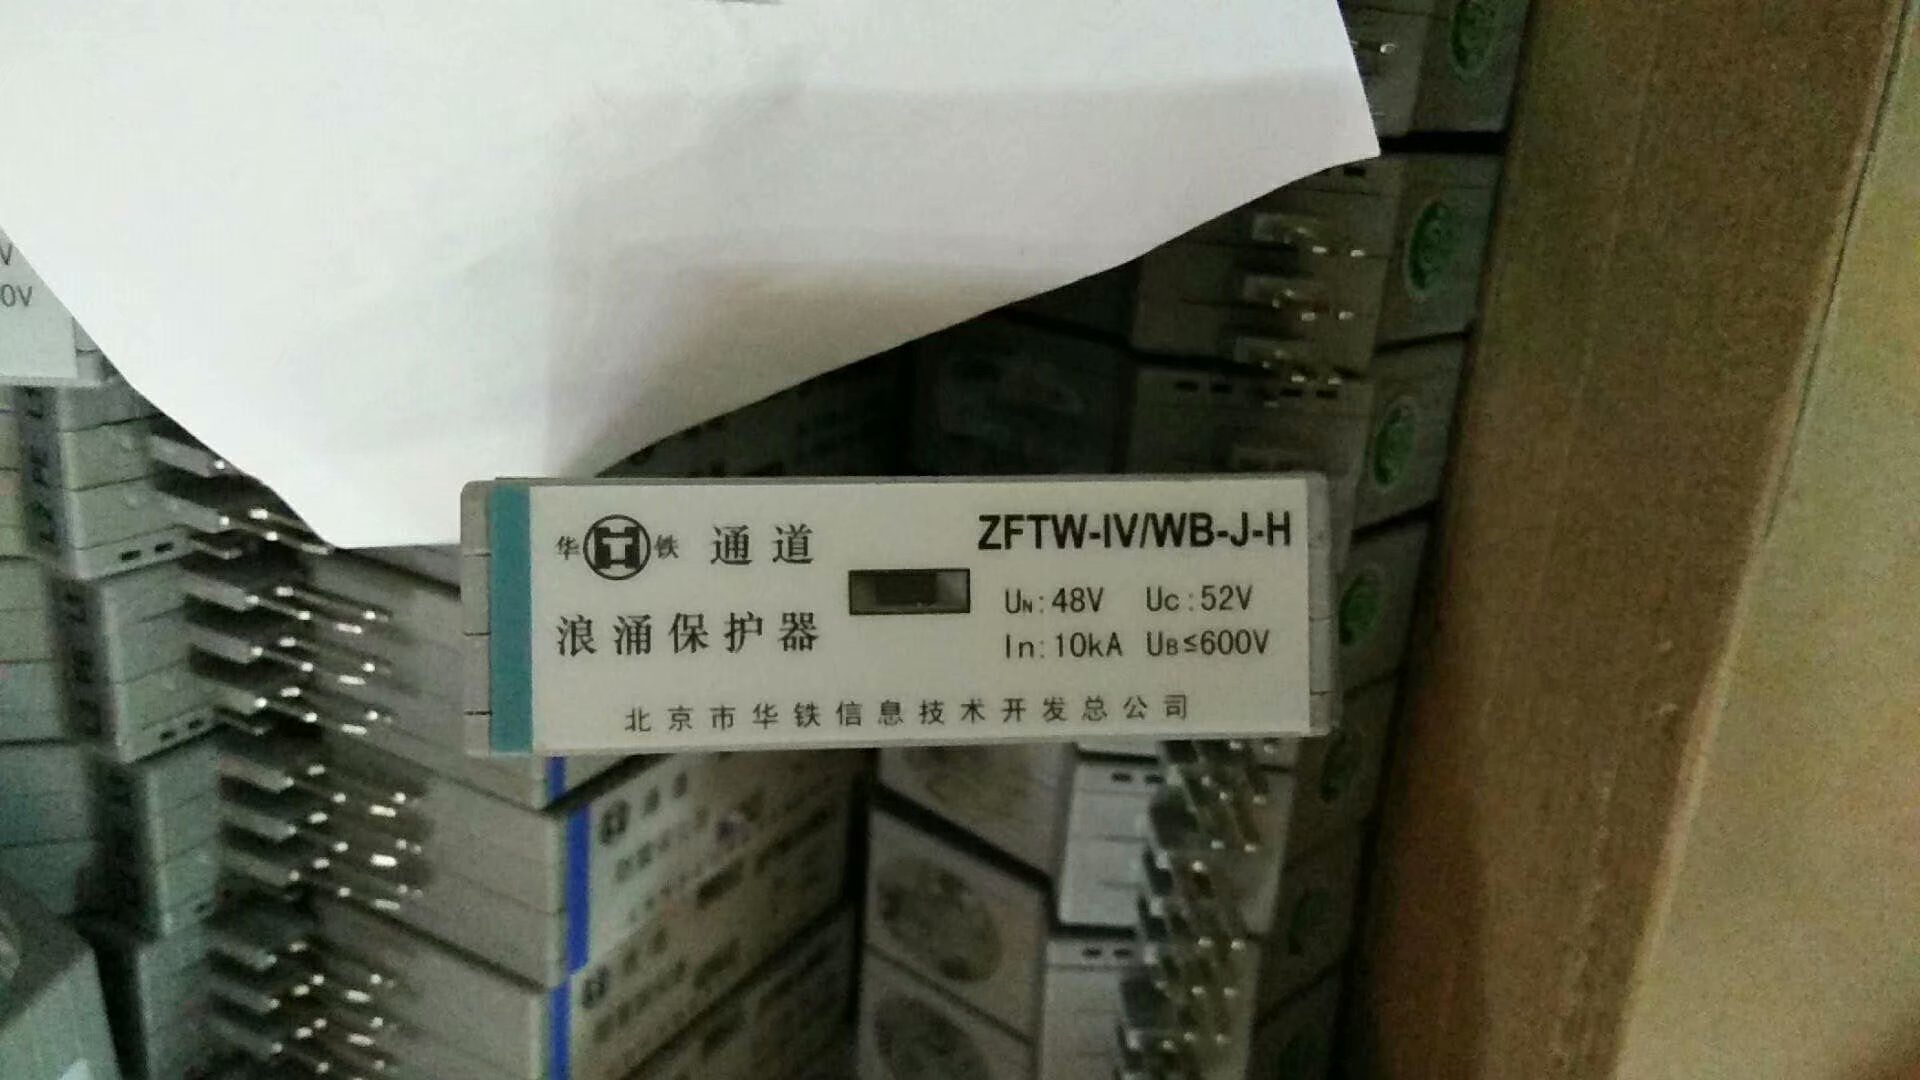 中国通号SPDR-IV-20-380三相交流电源防雷器